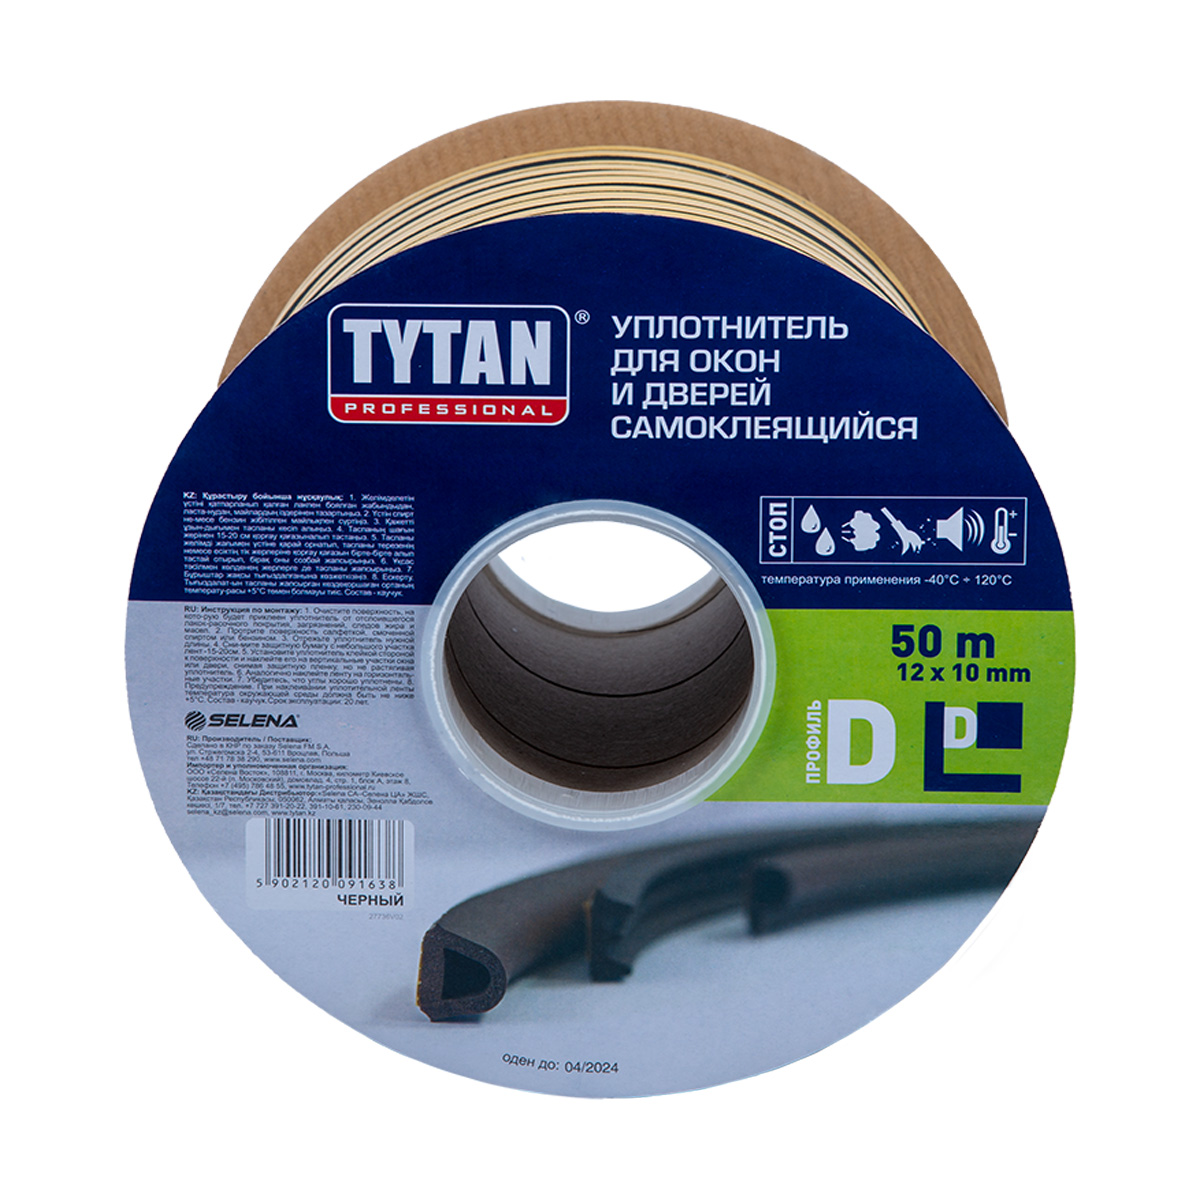 Уплотнитель промышленный Tytan Professional, D-профиль 12 x 10 мм, бухта 50 м, черный промышленный самоклеящийся уплотнитель zoom